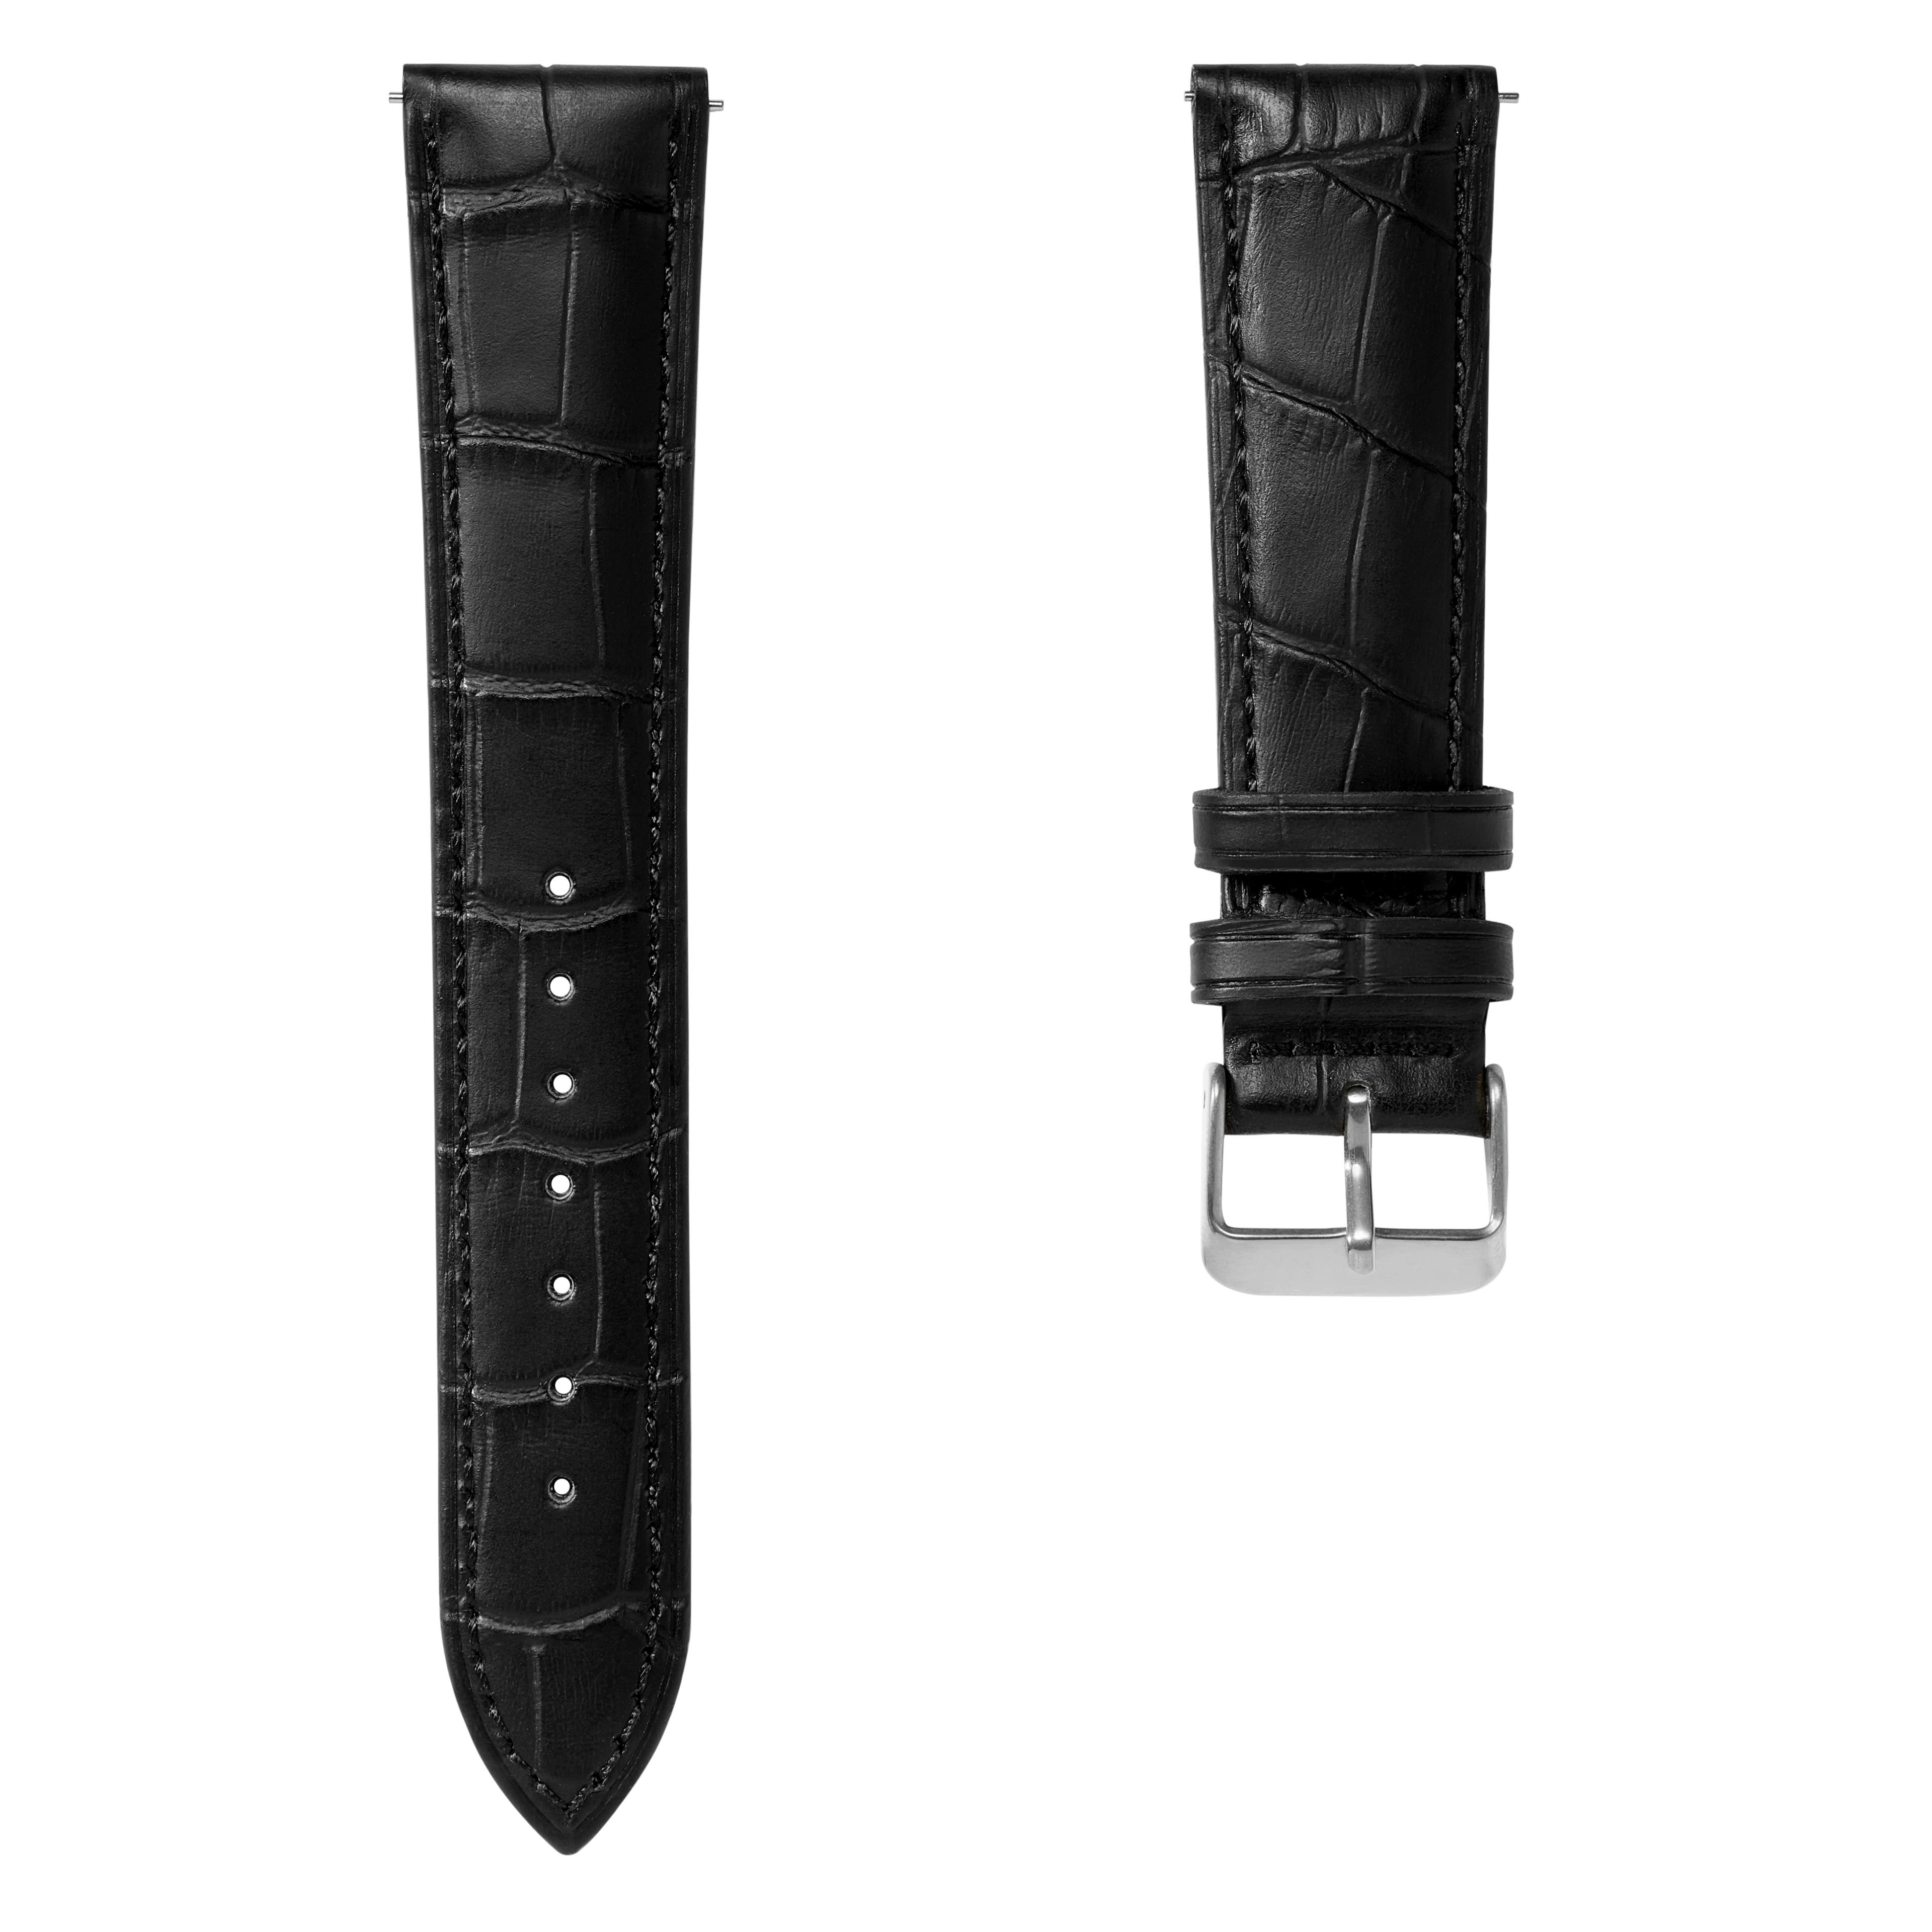 Correa de reloj de cuero negro con relieve de cocodrilo de 21 mm y hebilla plateada - De liberación rápida